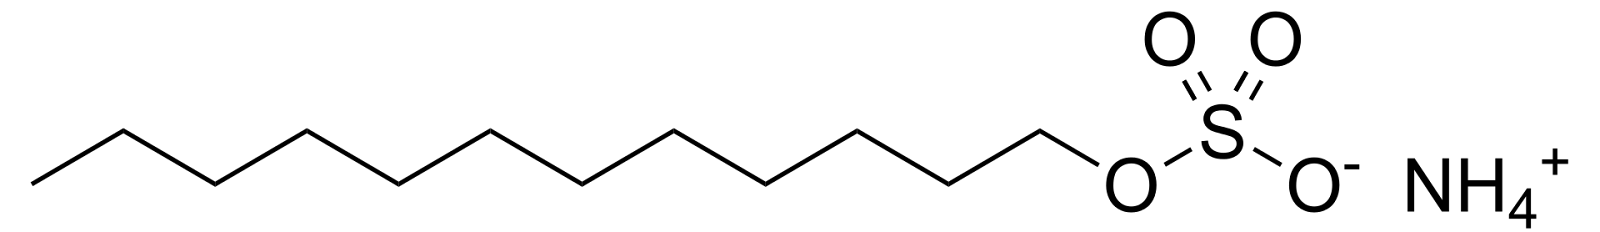 Structure of ammonium lauryl sulfate